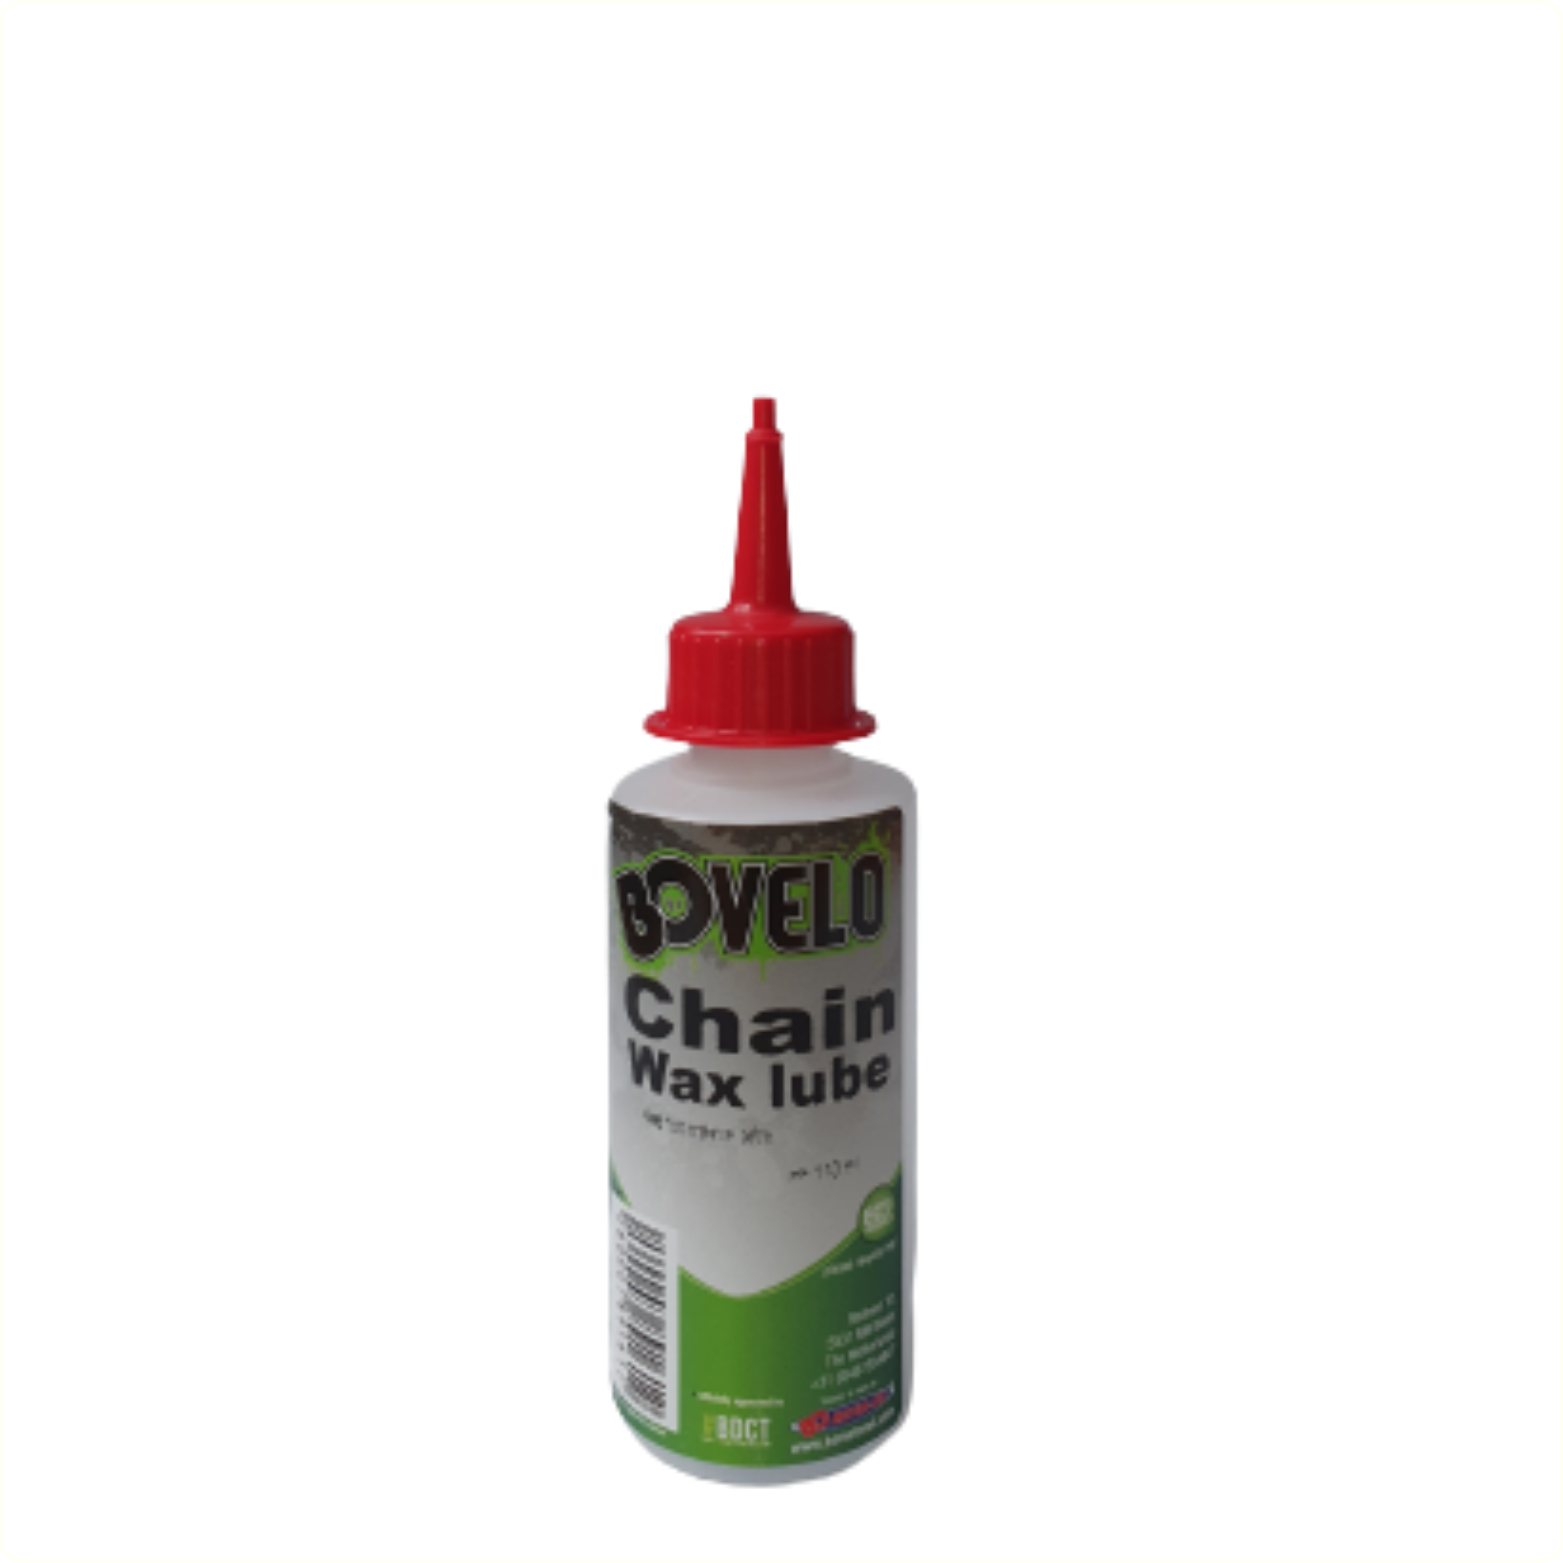 BOVelo Chain Wax Lube 110ML